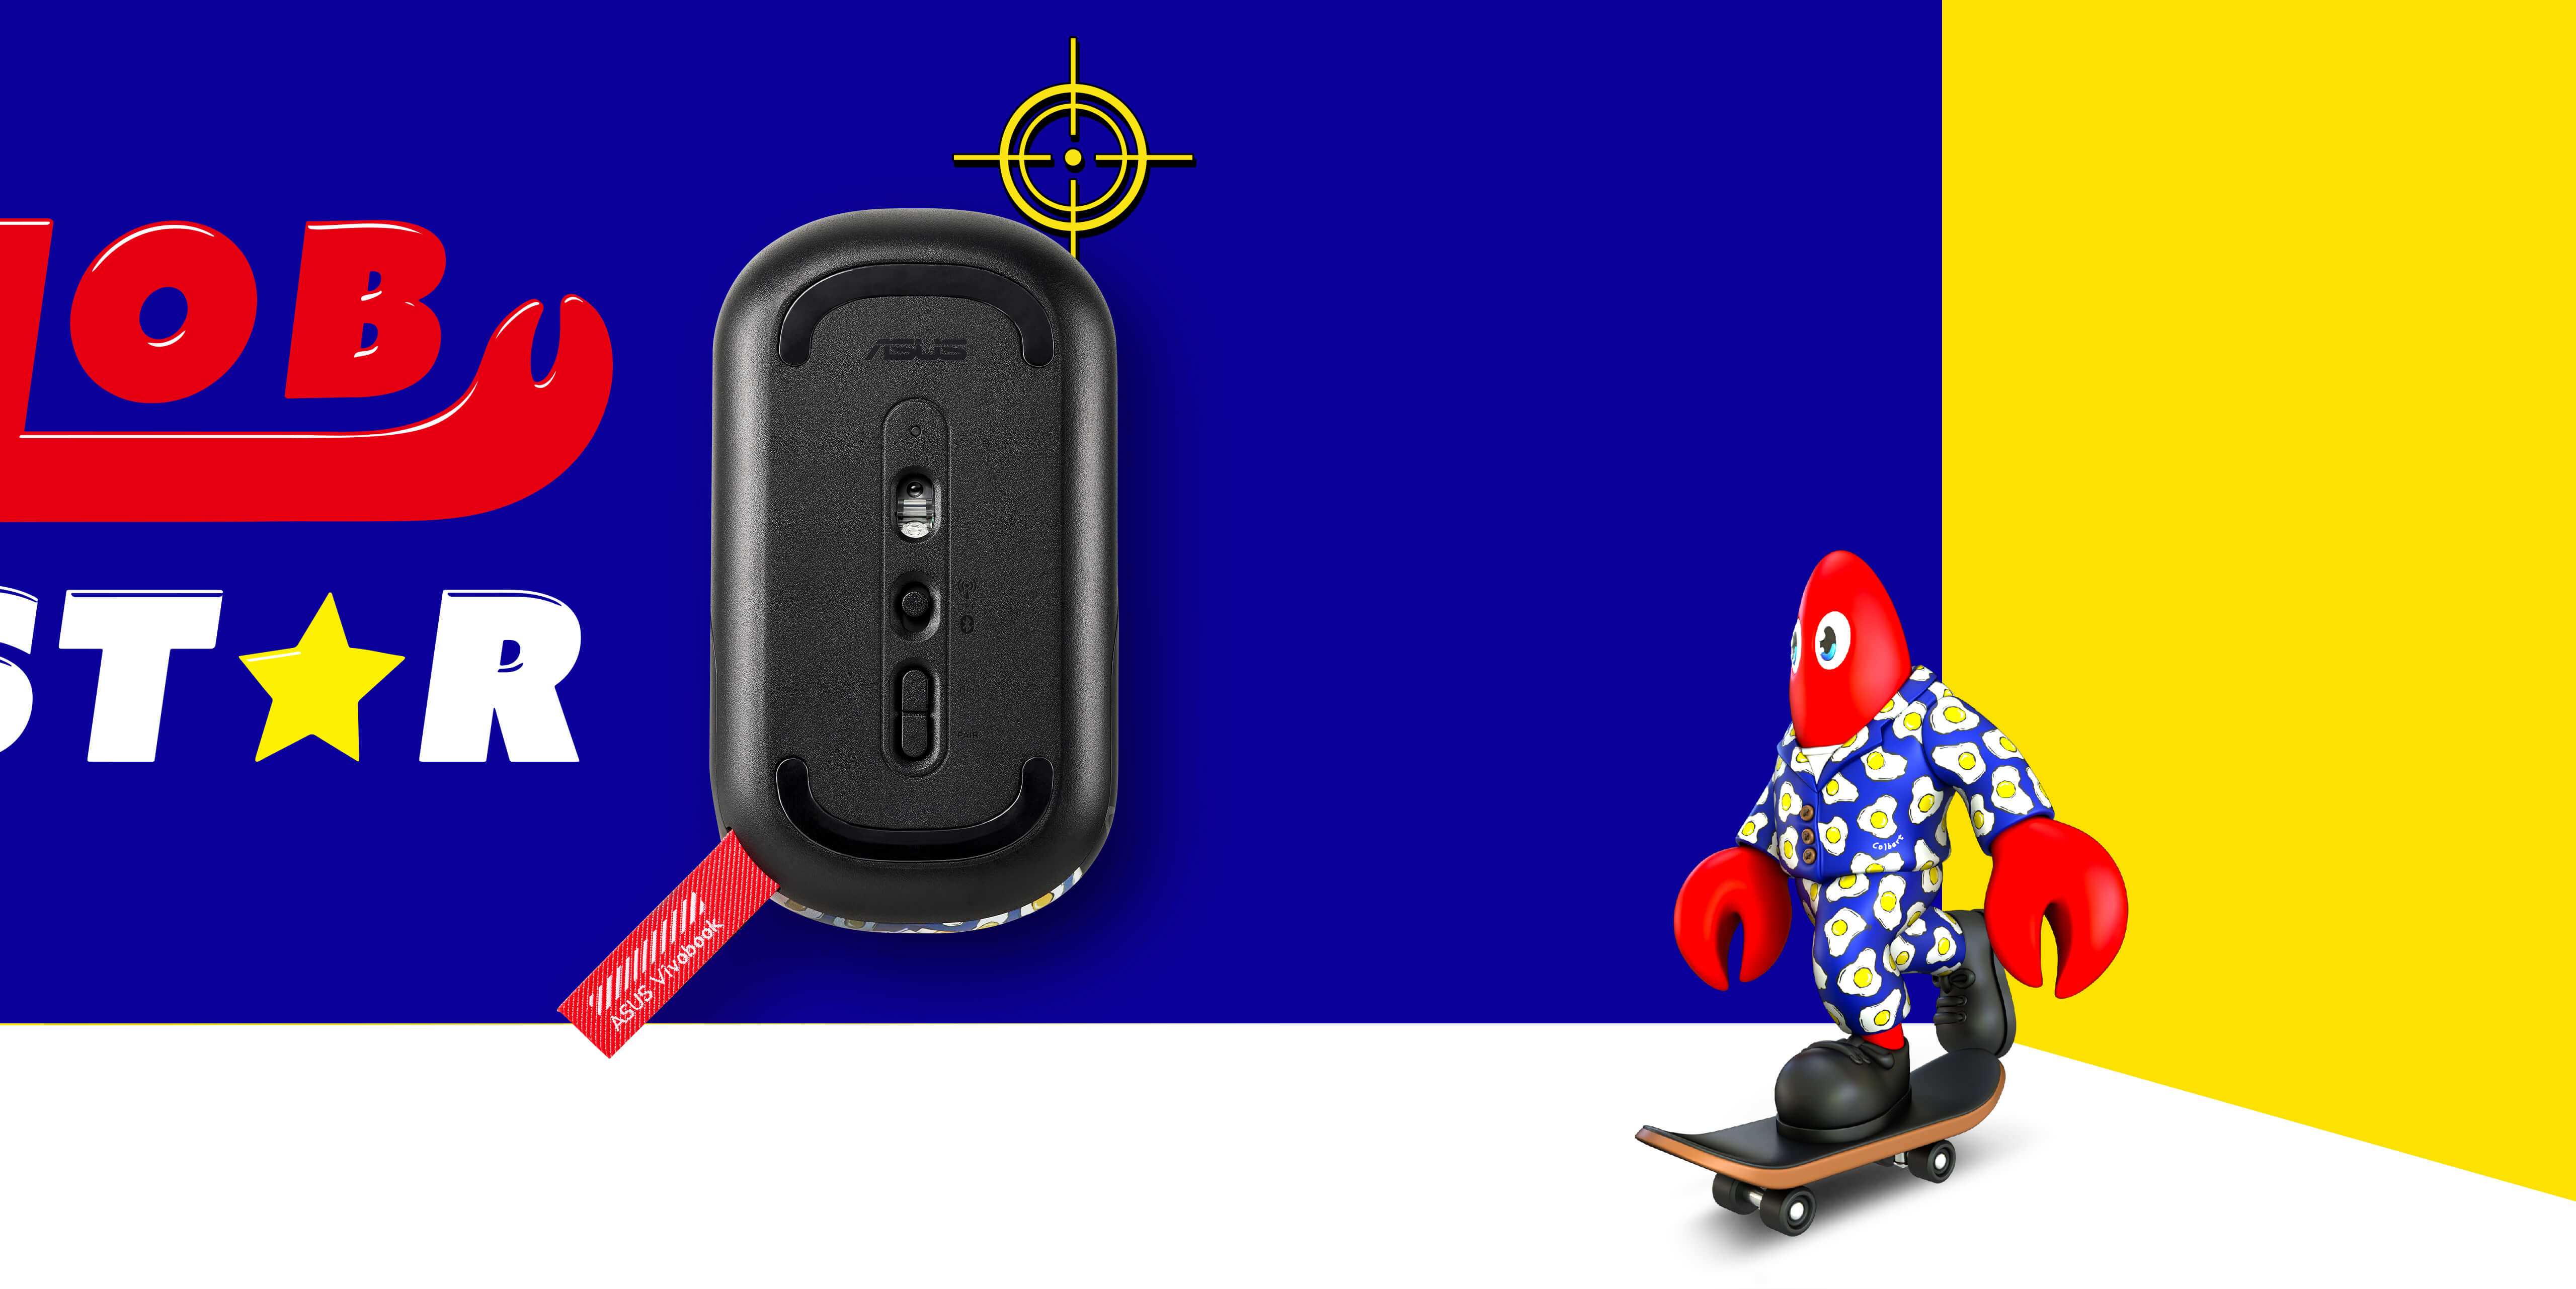 Een afbeelding van de onderkant van de MD100 Philip Colbert Edition om de muisvoetjes, optische sensor en DPI-knop te tonen. Een kreeftenfiguur op een skateboard staat in de achtergrond.